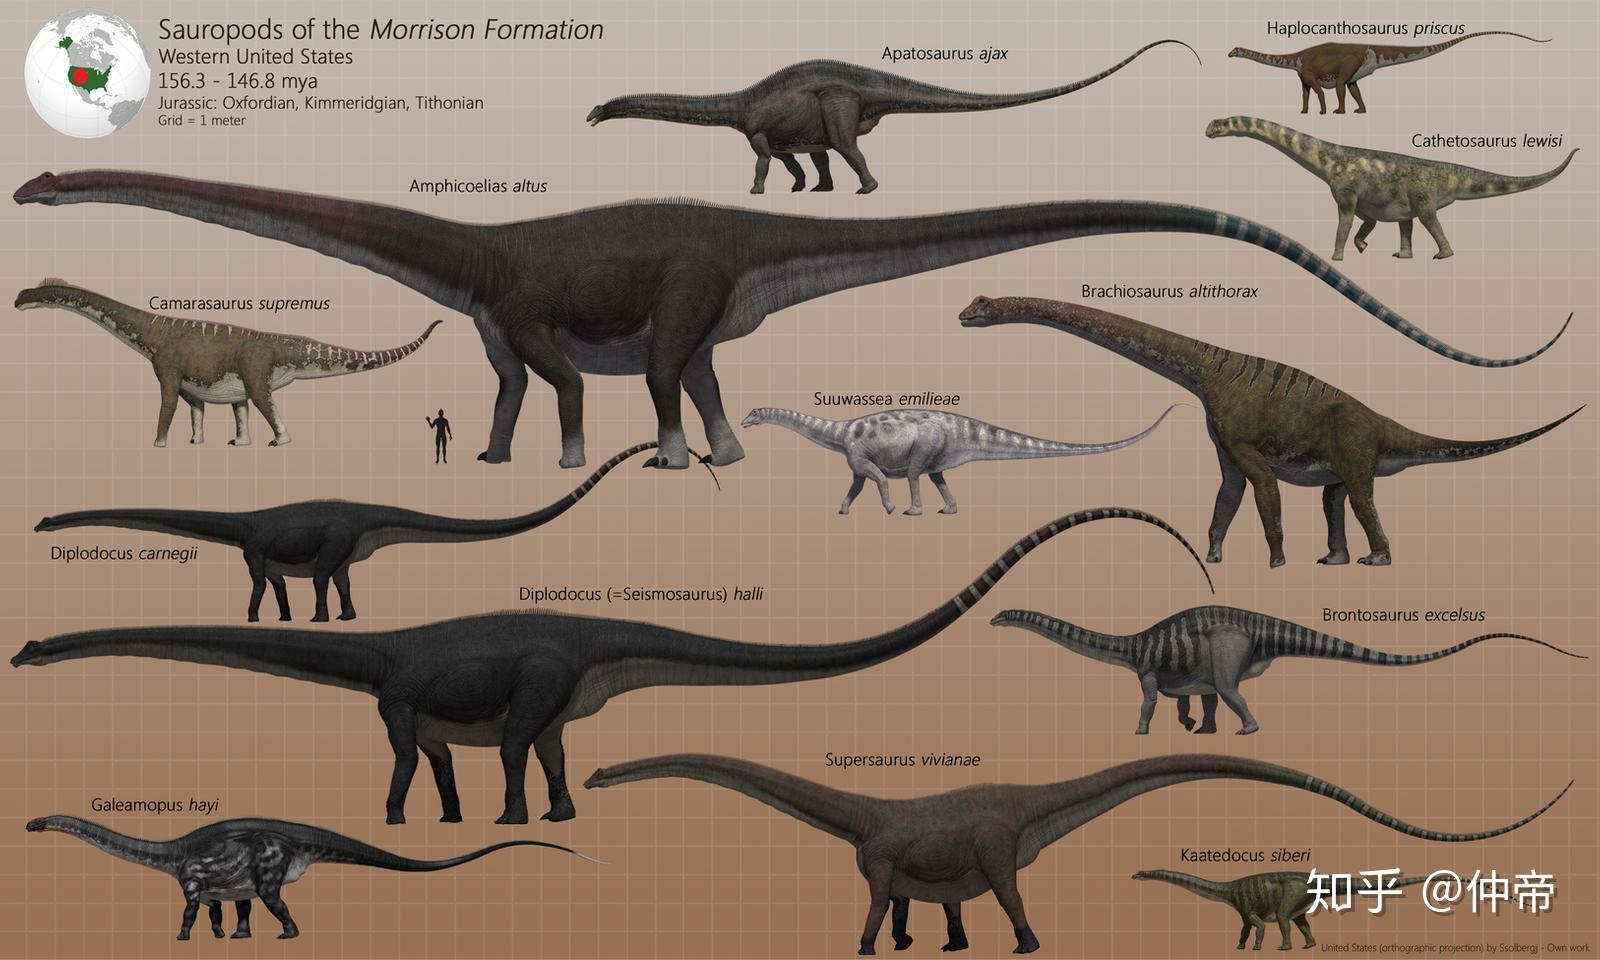 恐龙体型对比从小到大图片